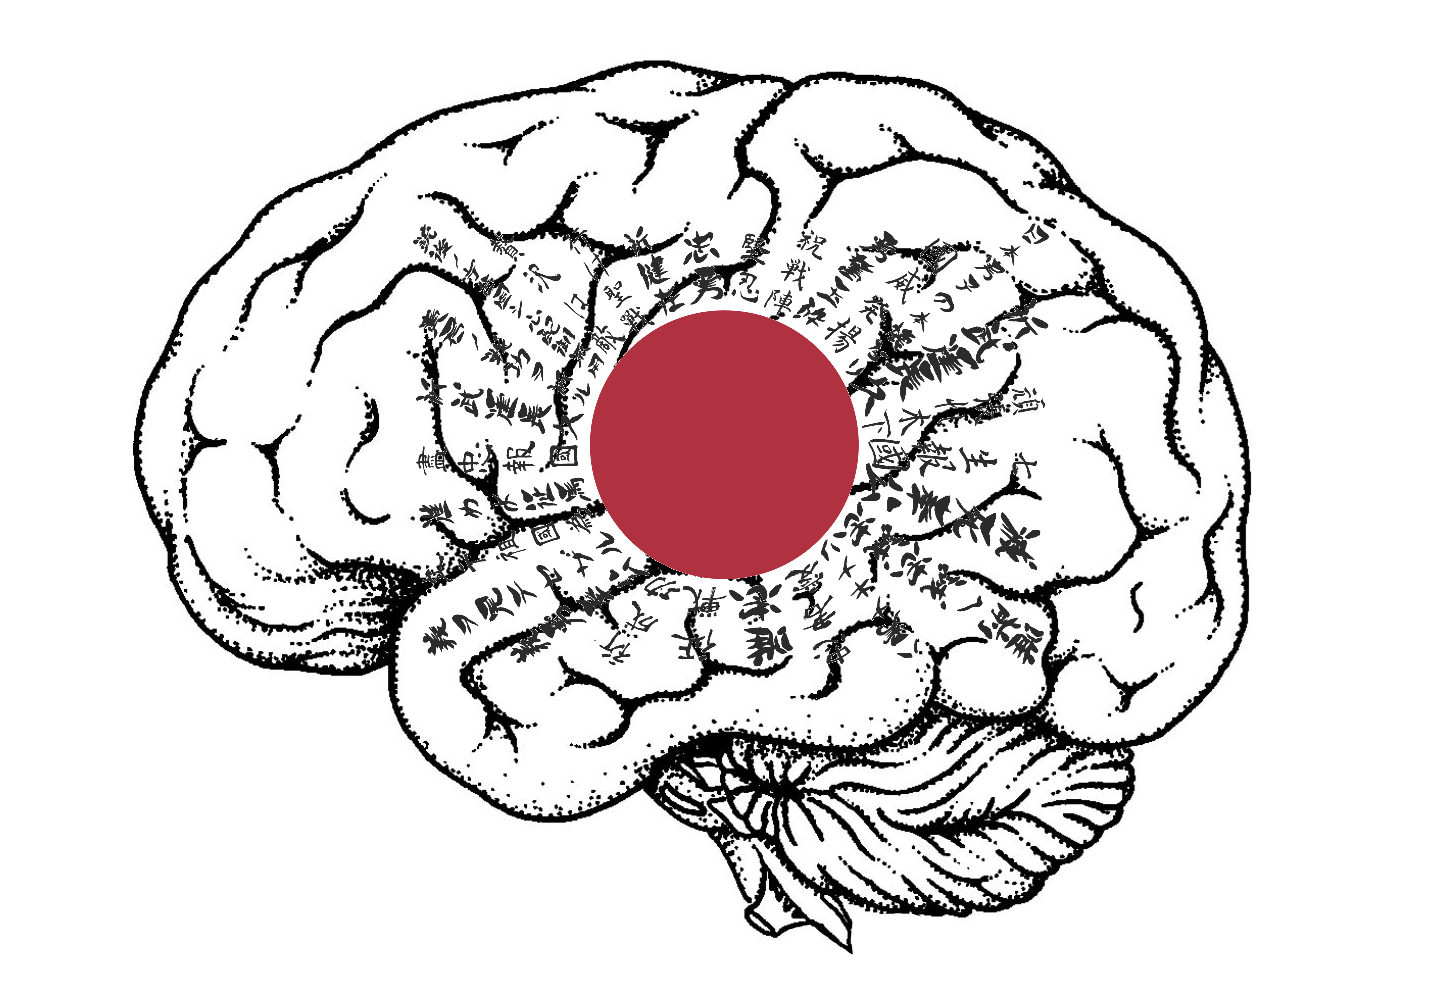 Gehirn mit Flagge des Japanischen Reiches zur Zeit des Zweiten Weltkrieges (Illustration von Bernhard Leitner)